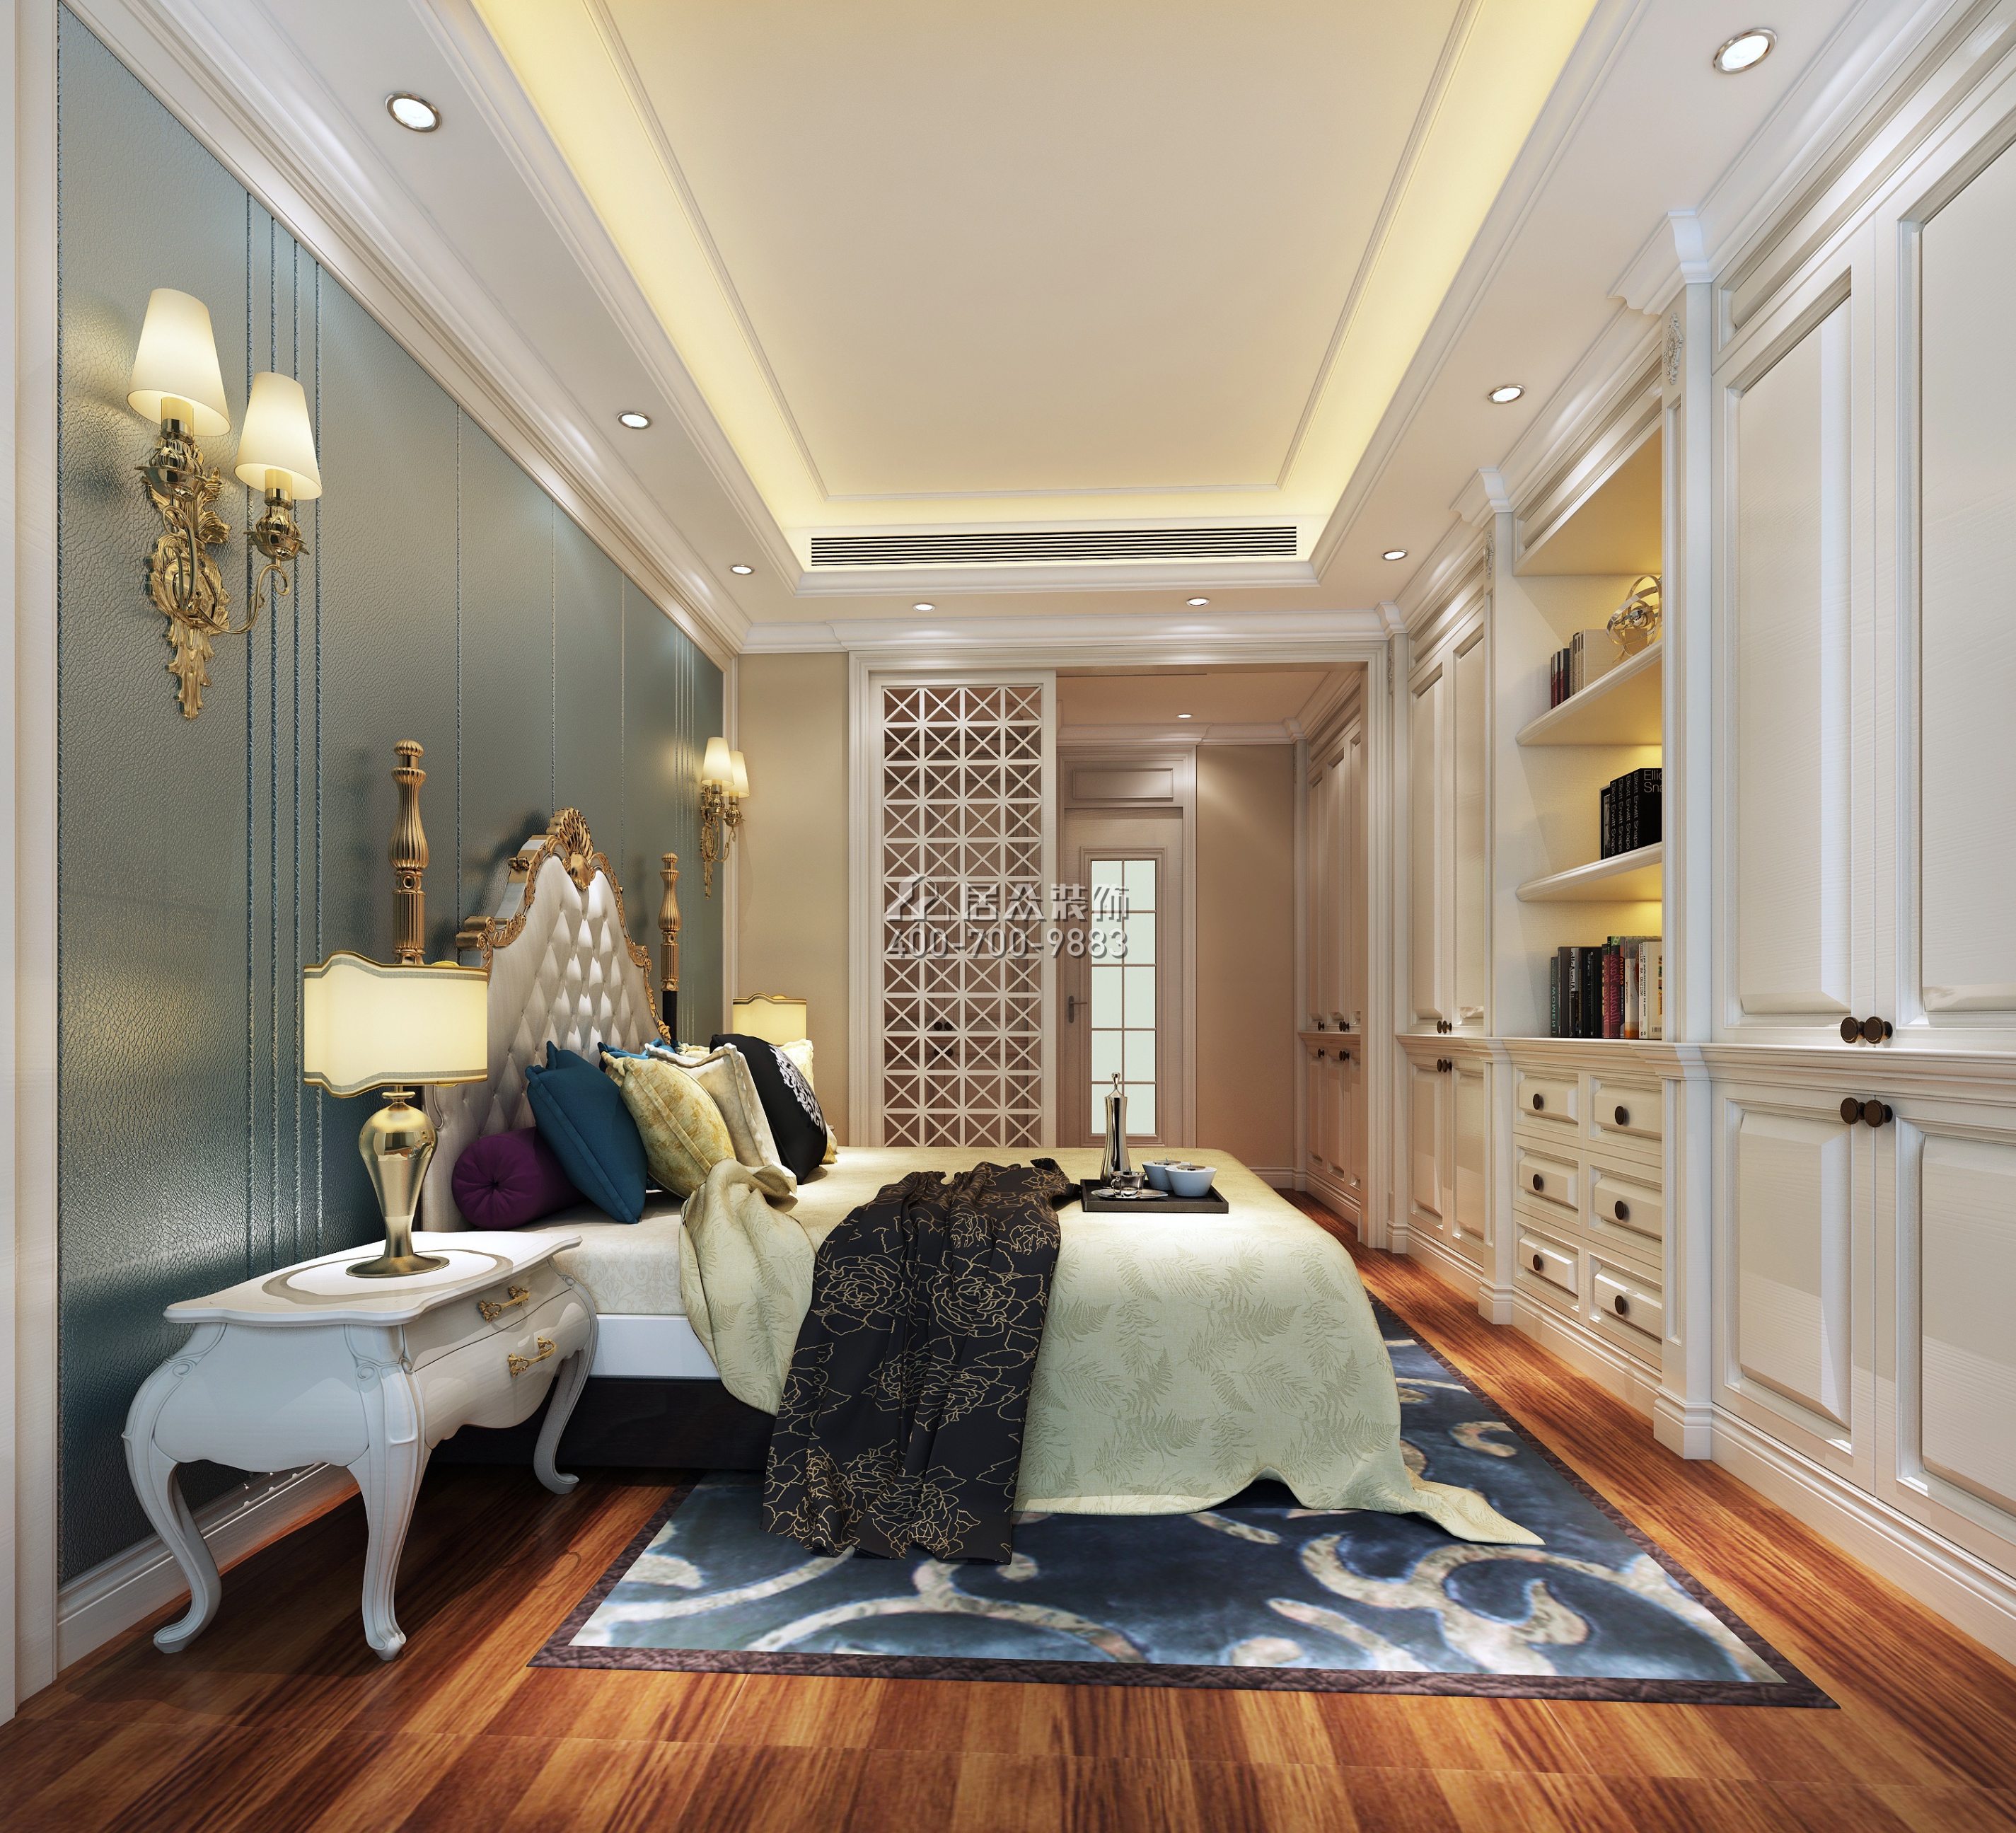 宝生midtown 156平方米欧式风格平层户型卧室装修效果图